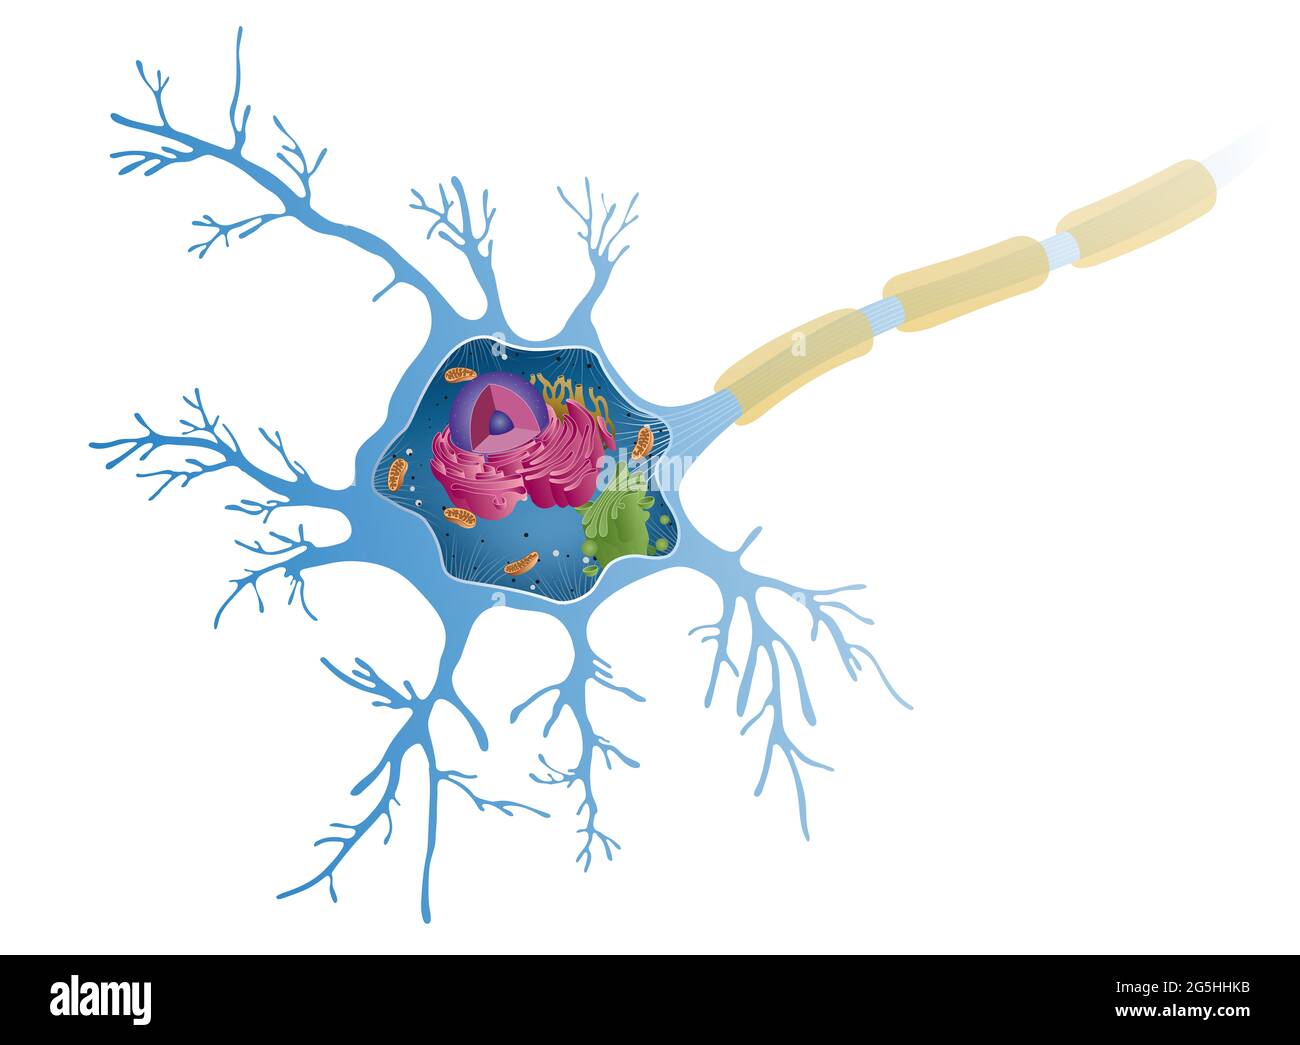 Anatomie d'un neurone multipolaire. Les cellules nerveuses, également appelées neurones, sont la composante active du système nerveux Banque D'Images